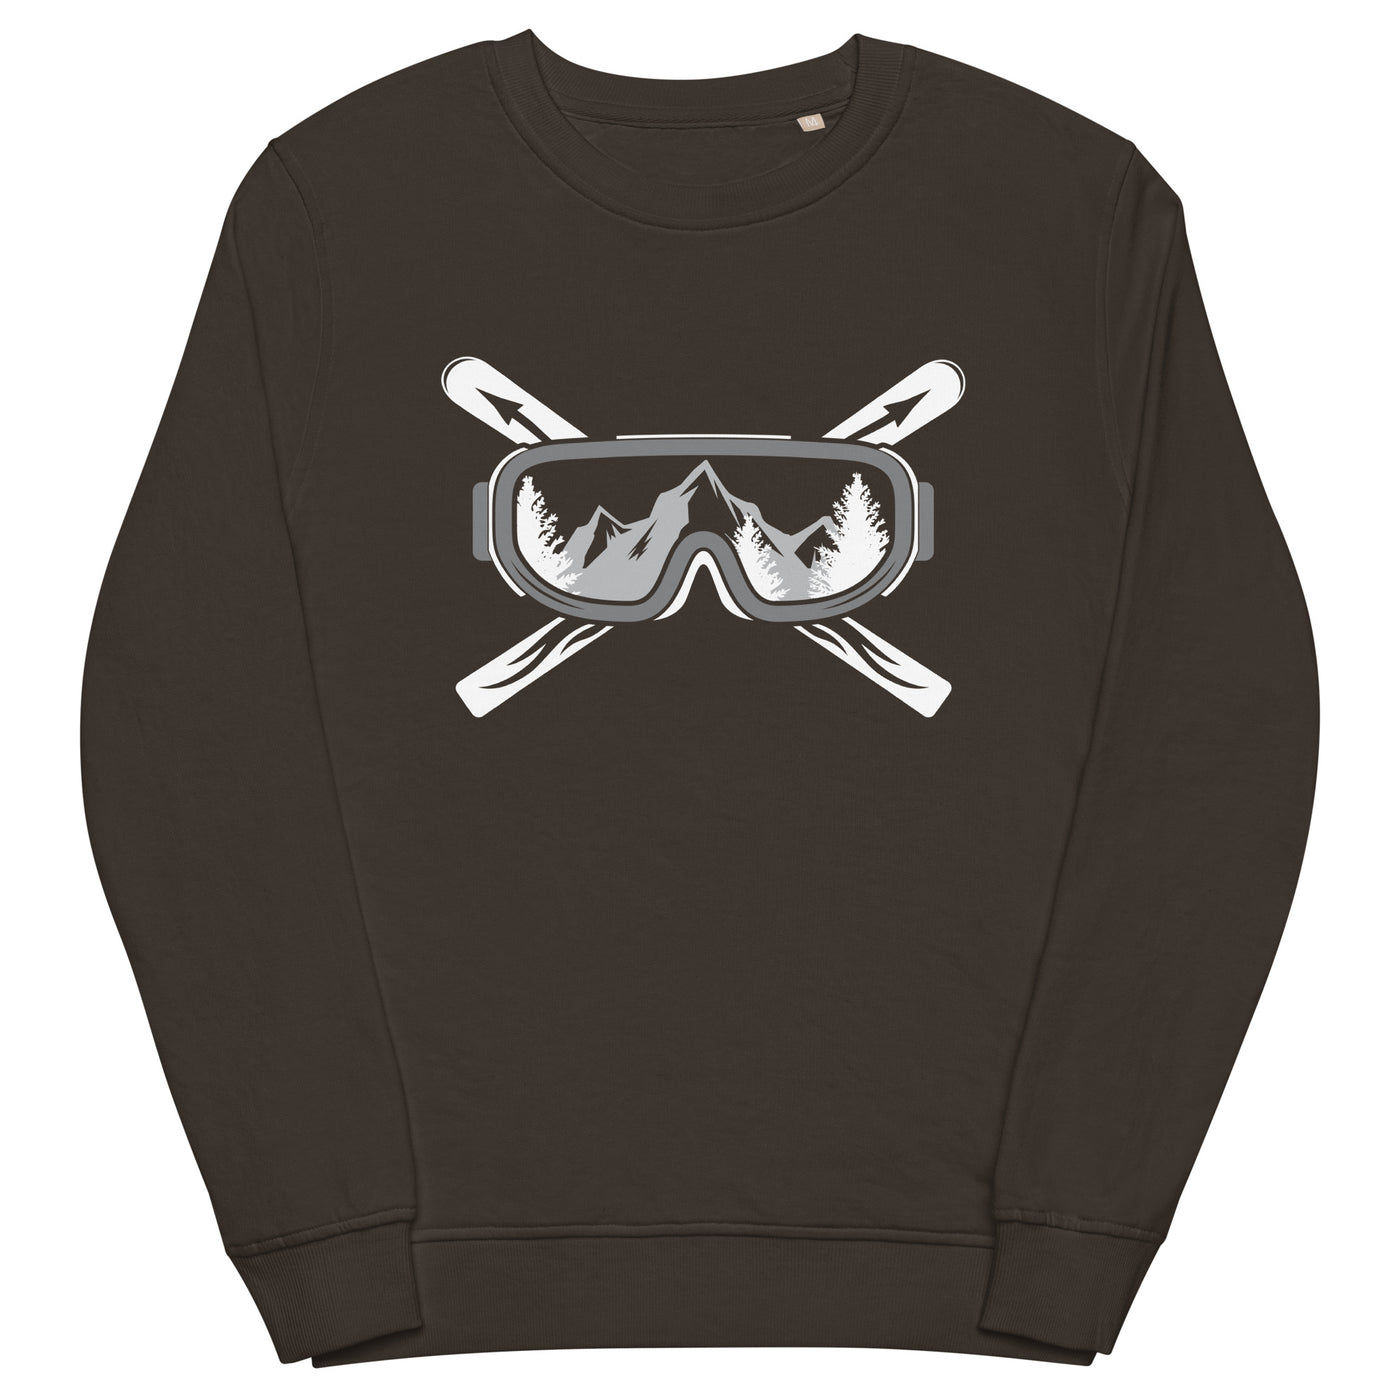 Berge Skier - Unisex Premium Organic Sweatshirt klettern ski xxx yyy zzz Deep Charcoal Grey